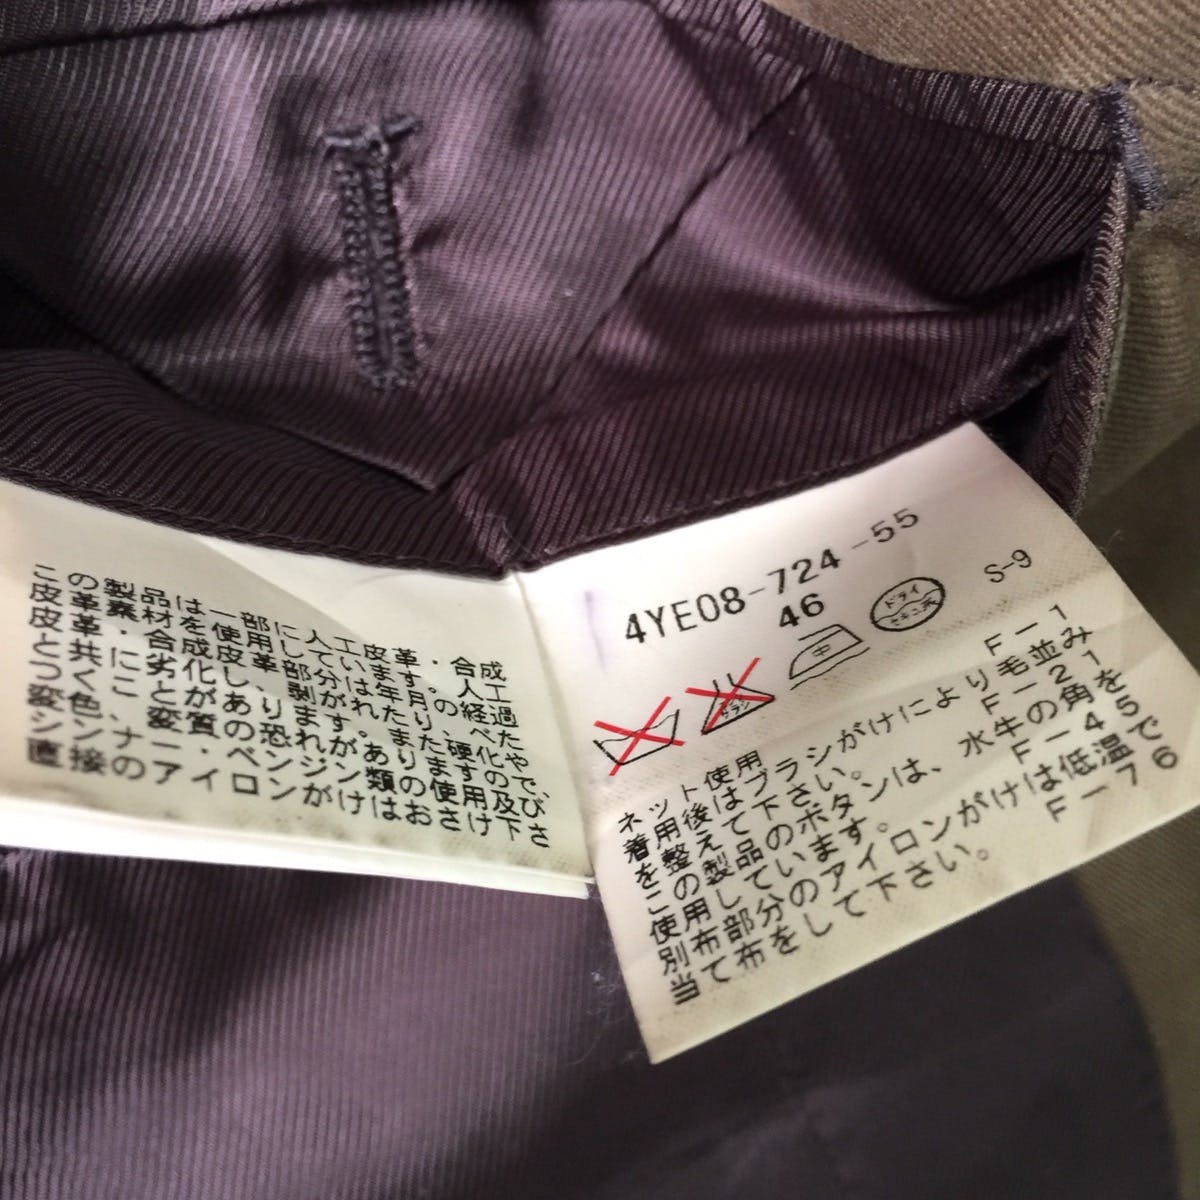 EZ by Zegna blazer jacket made in Japan - 12